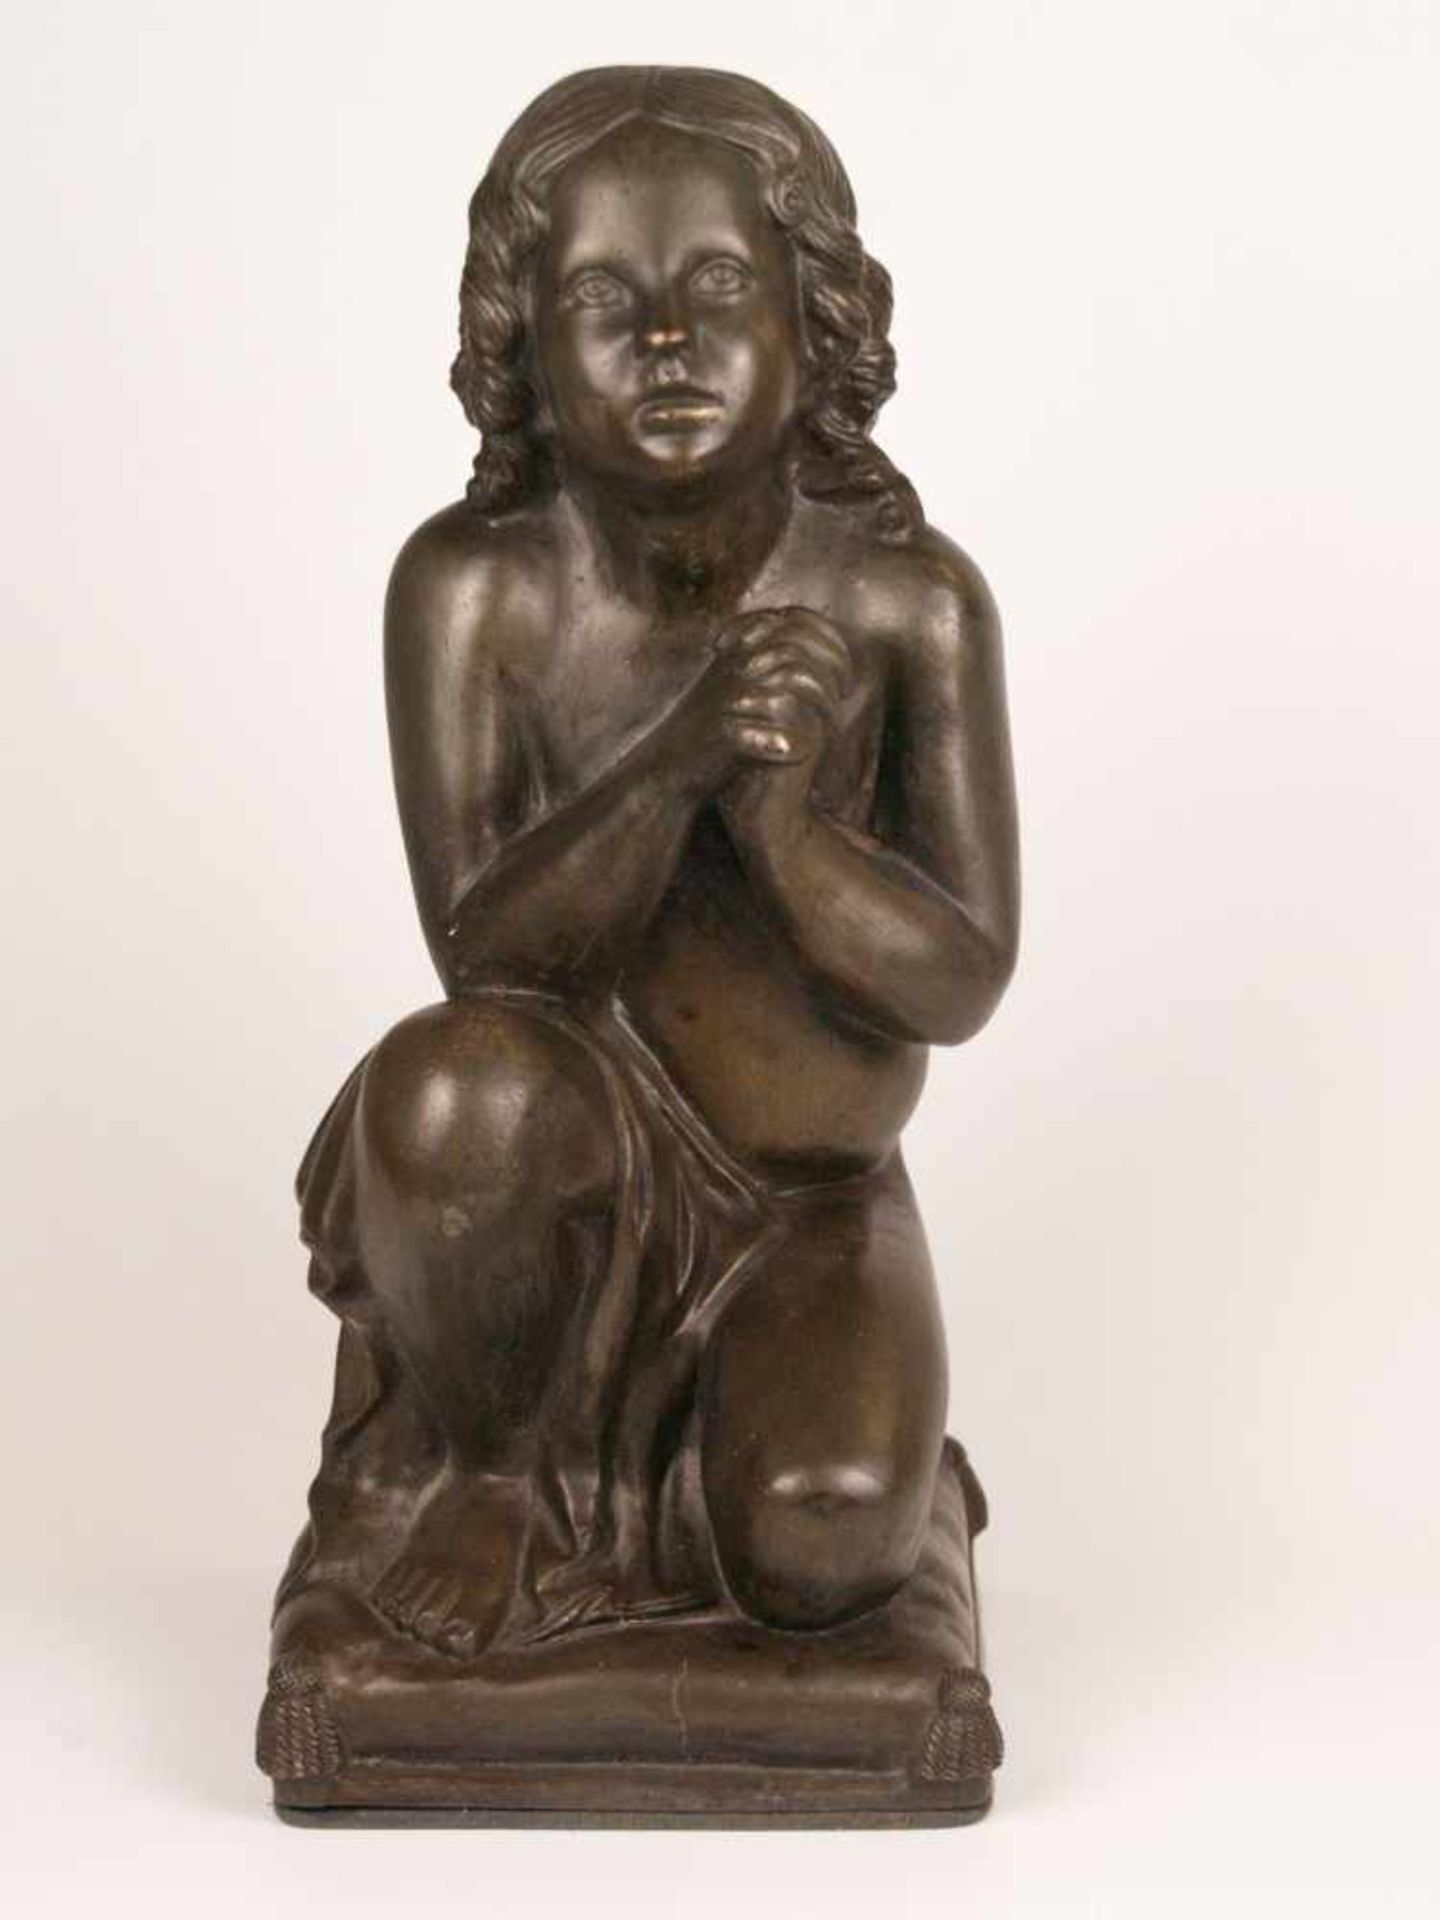 Betendes Kind - Galvanoplastik, bronzefarben patiniert, vollplastische Darstellung mit gefalteten